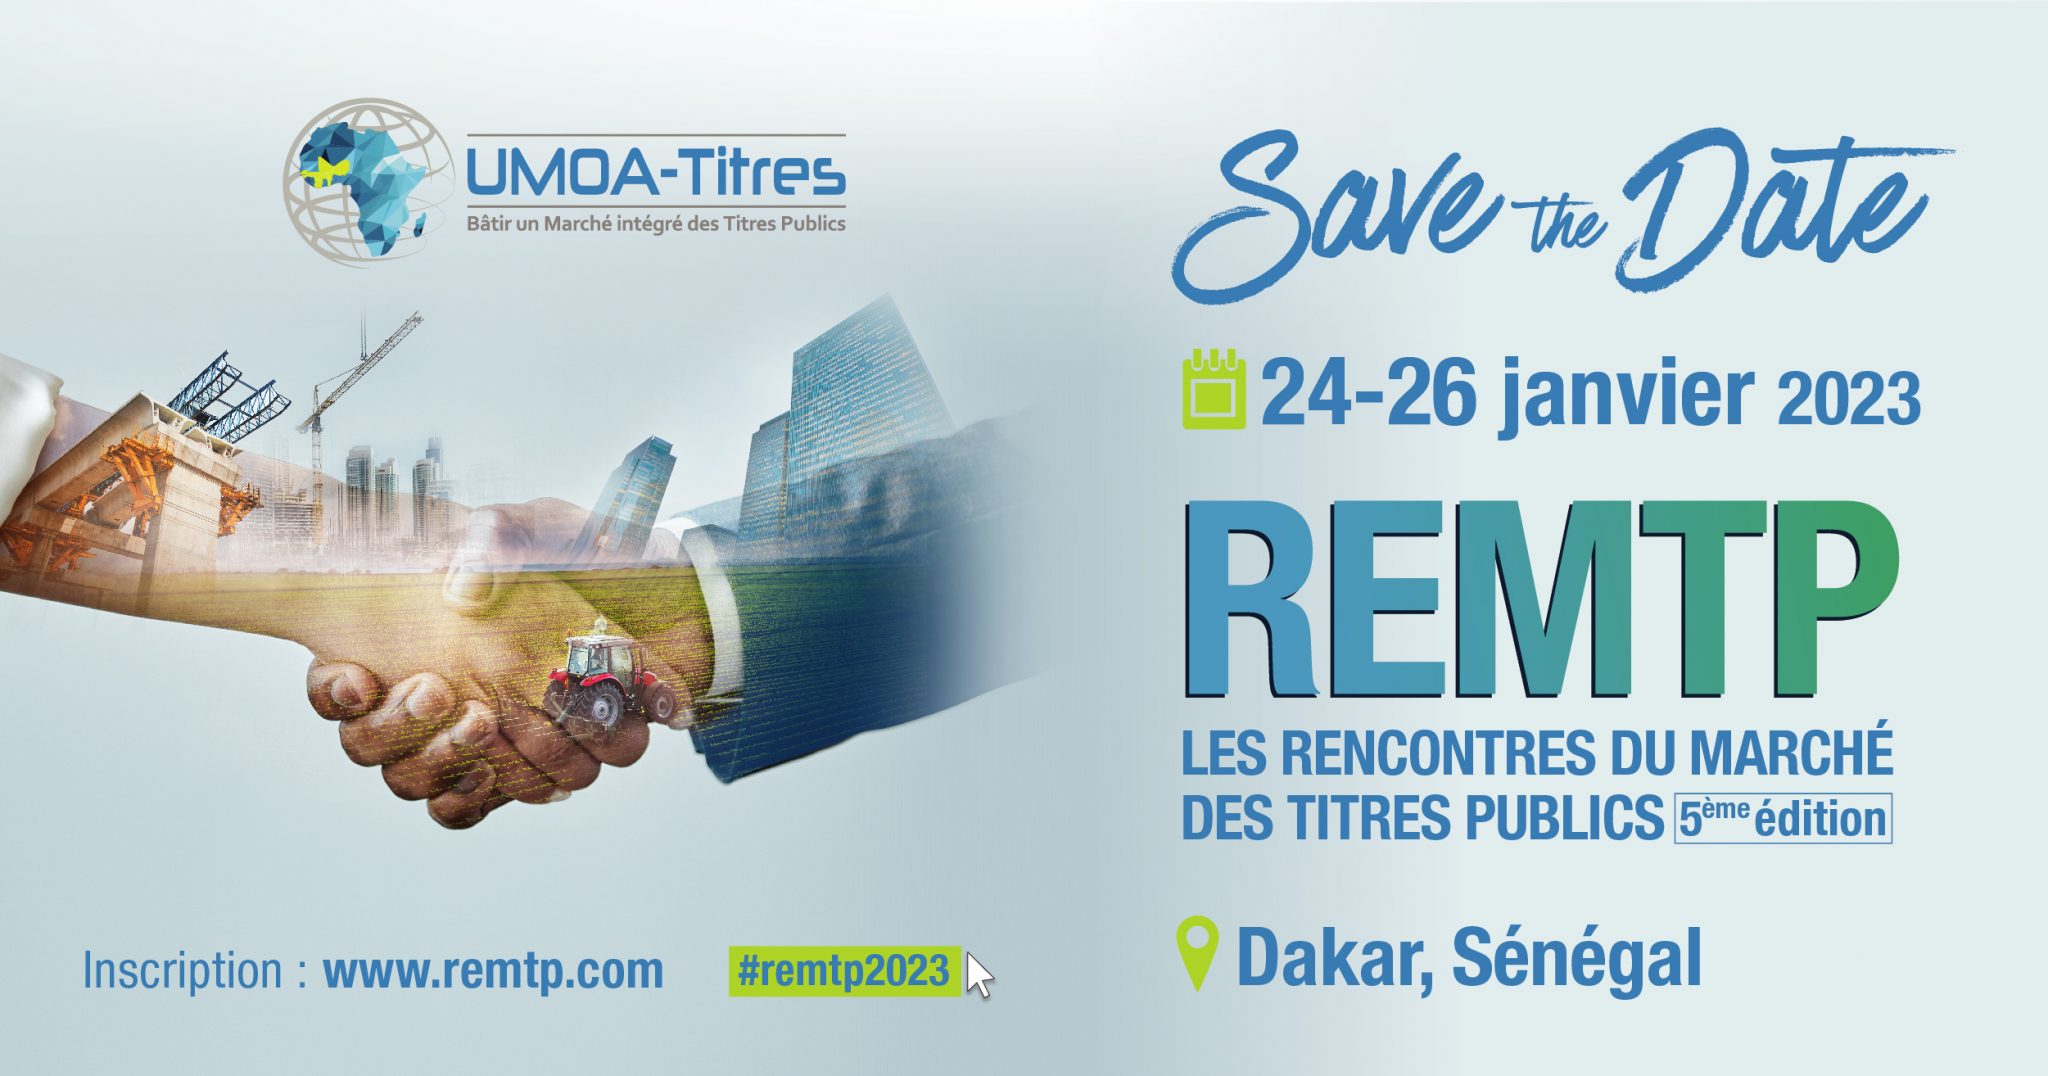  Rencontres du marché des titres publics de l’UEMOA : près de 200 acteurs régionaux et internationaux attendus à Dakar 